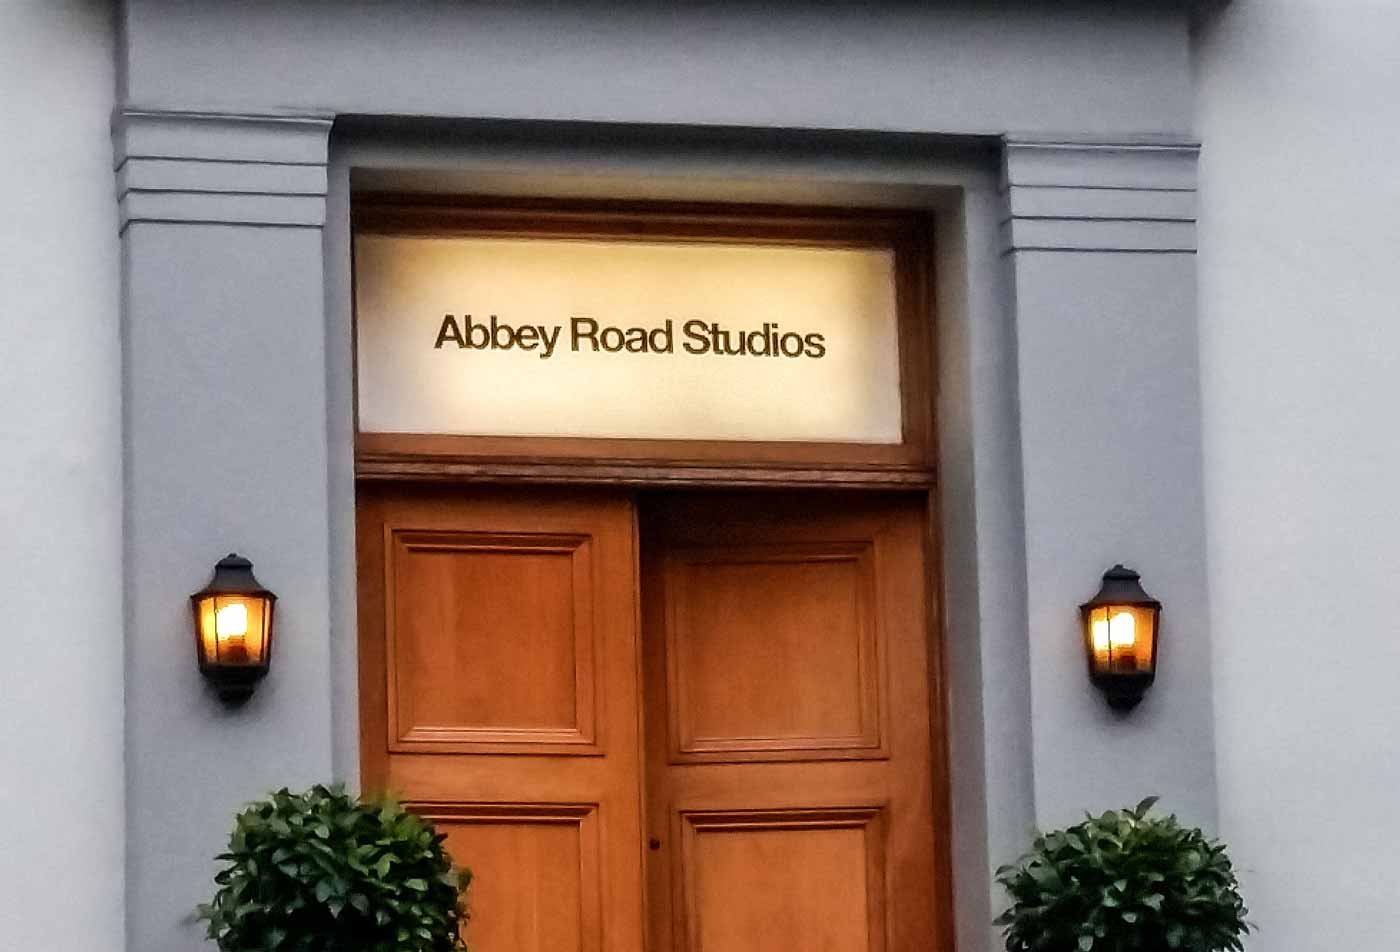 Estúdio Abbey Road como um dos pontos turísticos em Londres